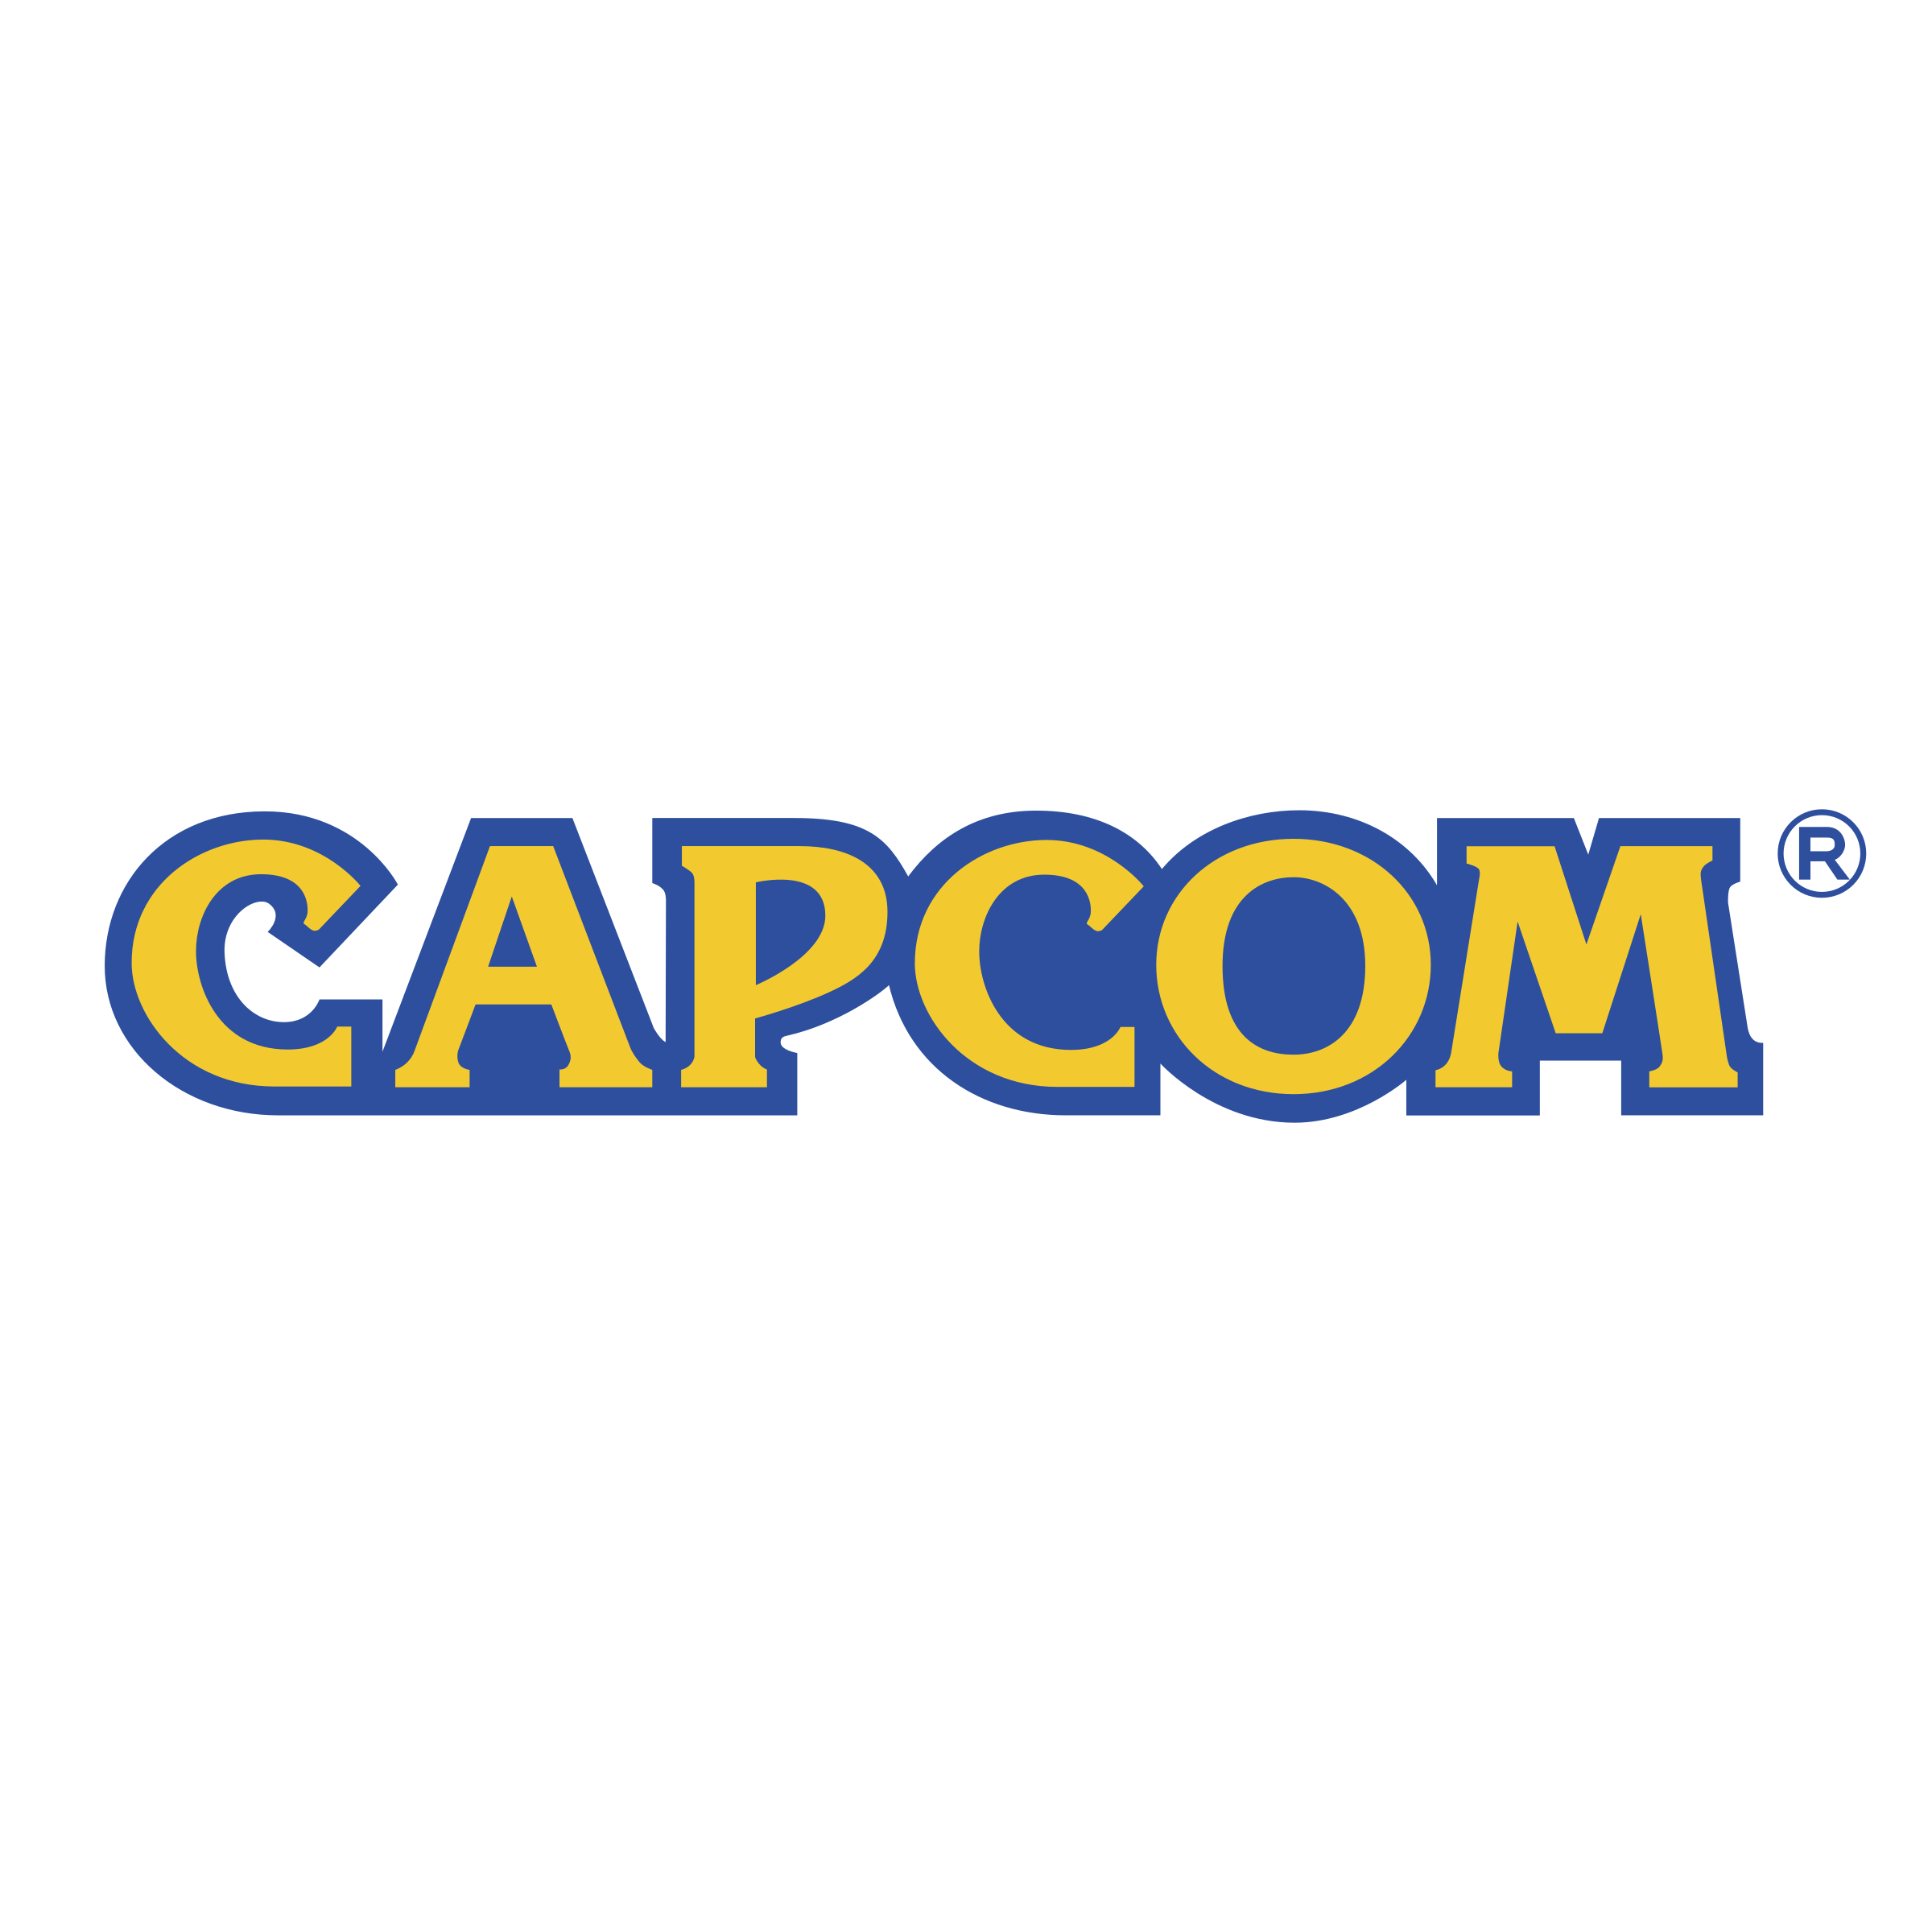 Capcom Logo - Capcom Logo PNG Transparent & SVG Vector - Freebie Supply